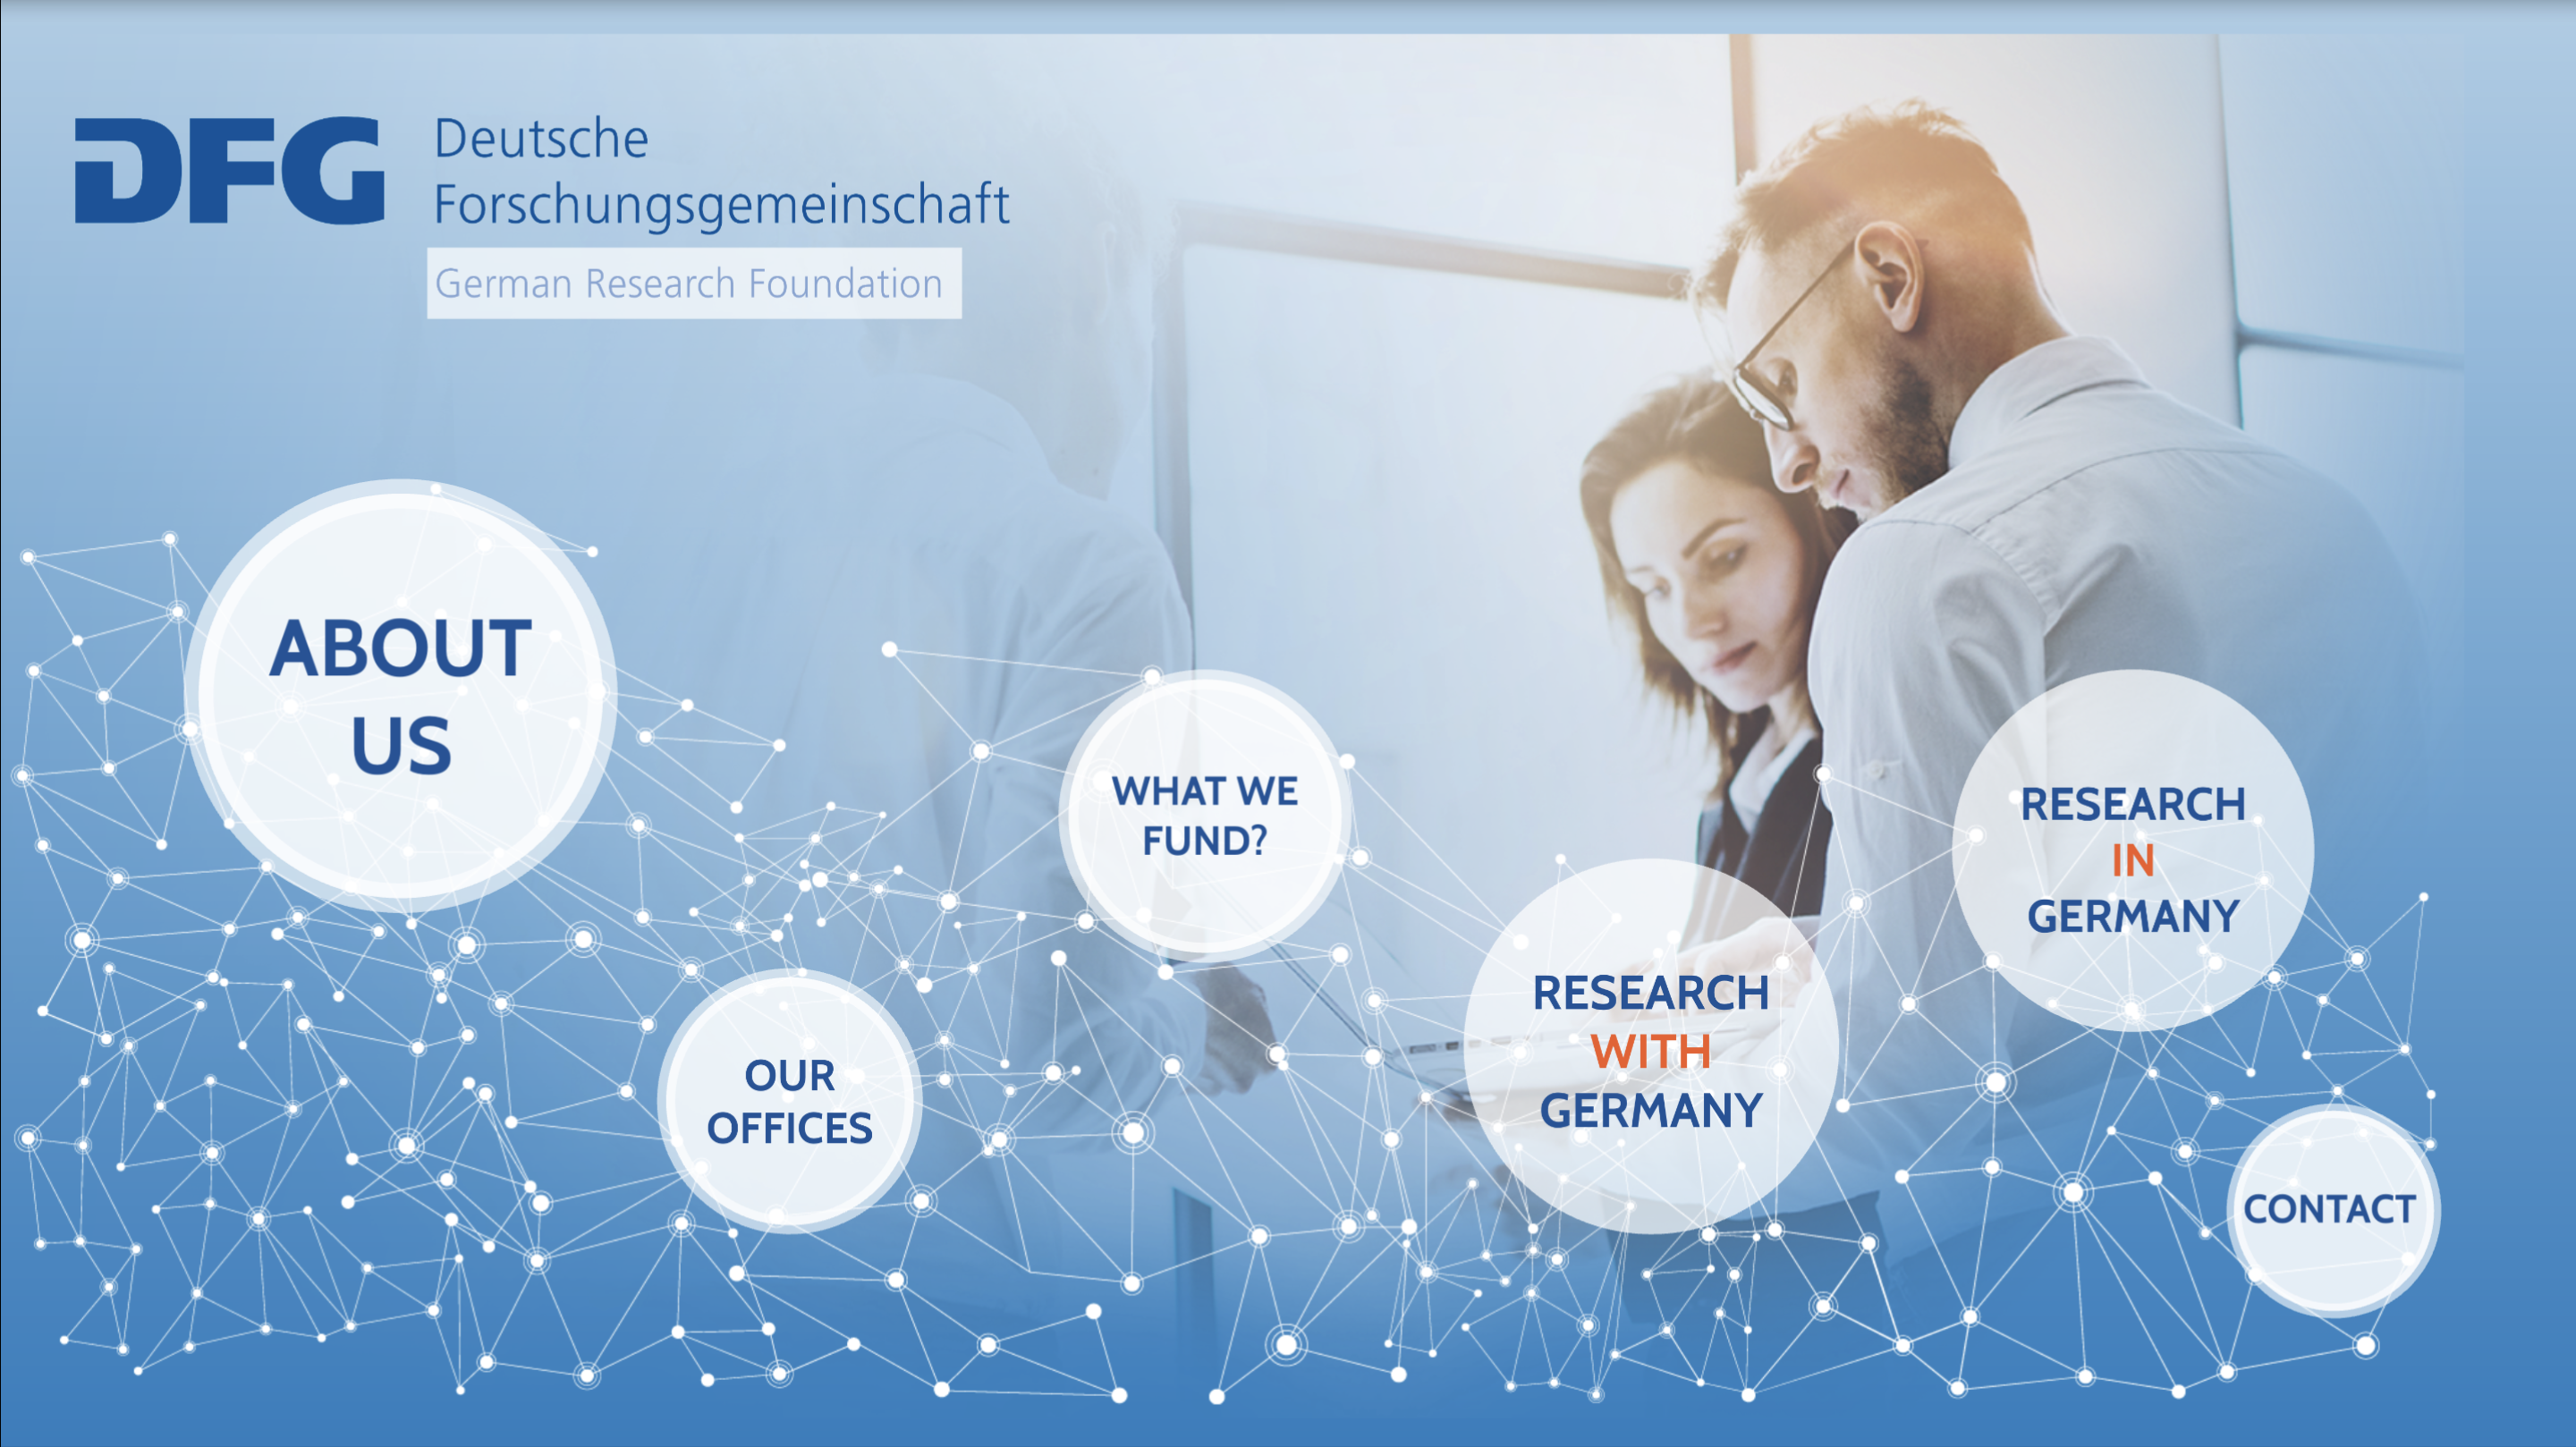 Nova apresentação da DFG explica as oportunidades de pesquisa em cooperação com a Alemanha